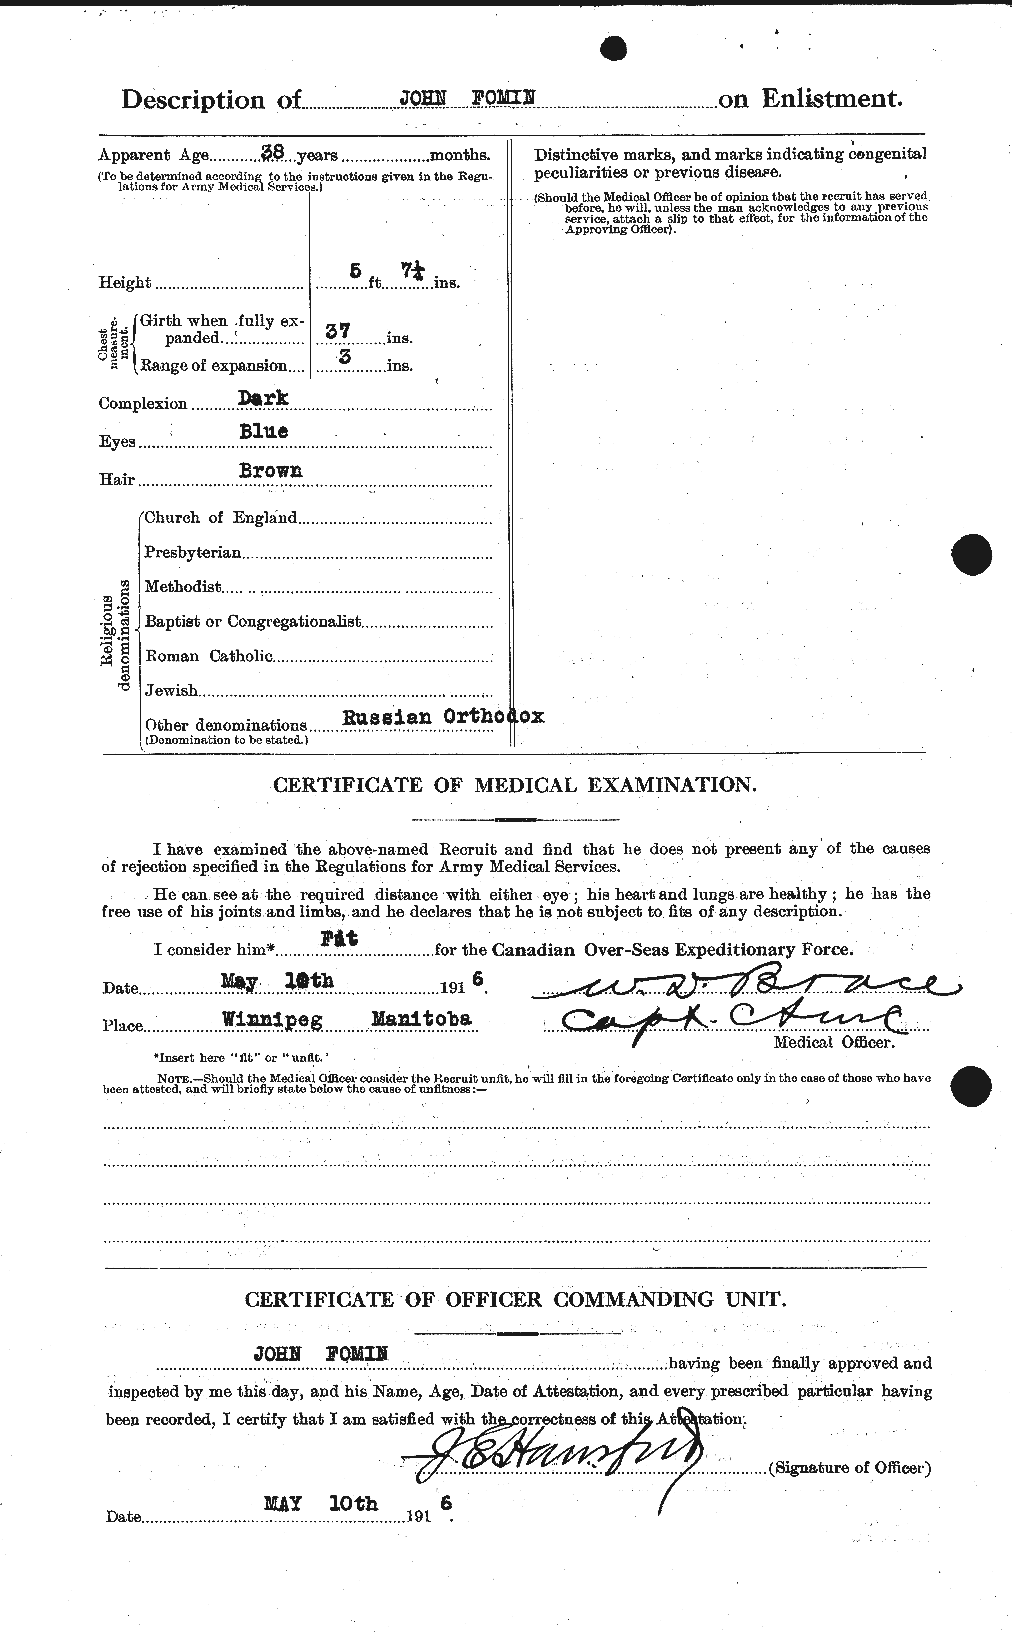 Dossiers du Personnel de la Première Guerre mondiale - CEC 328424b